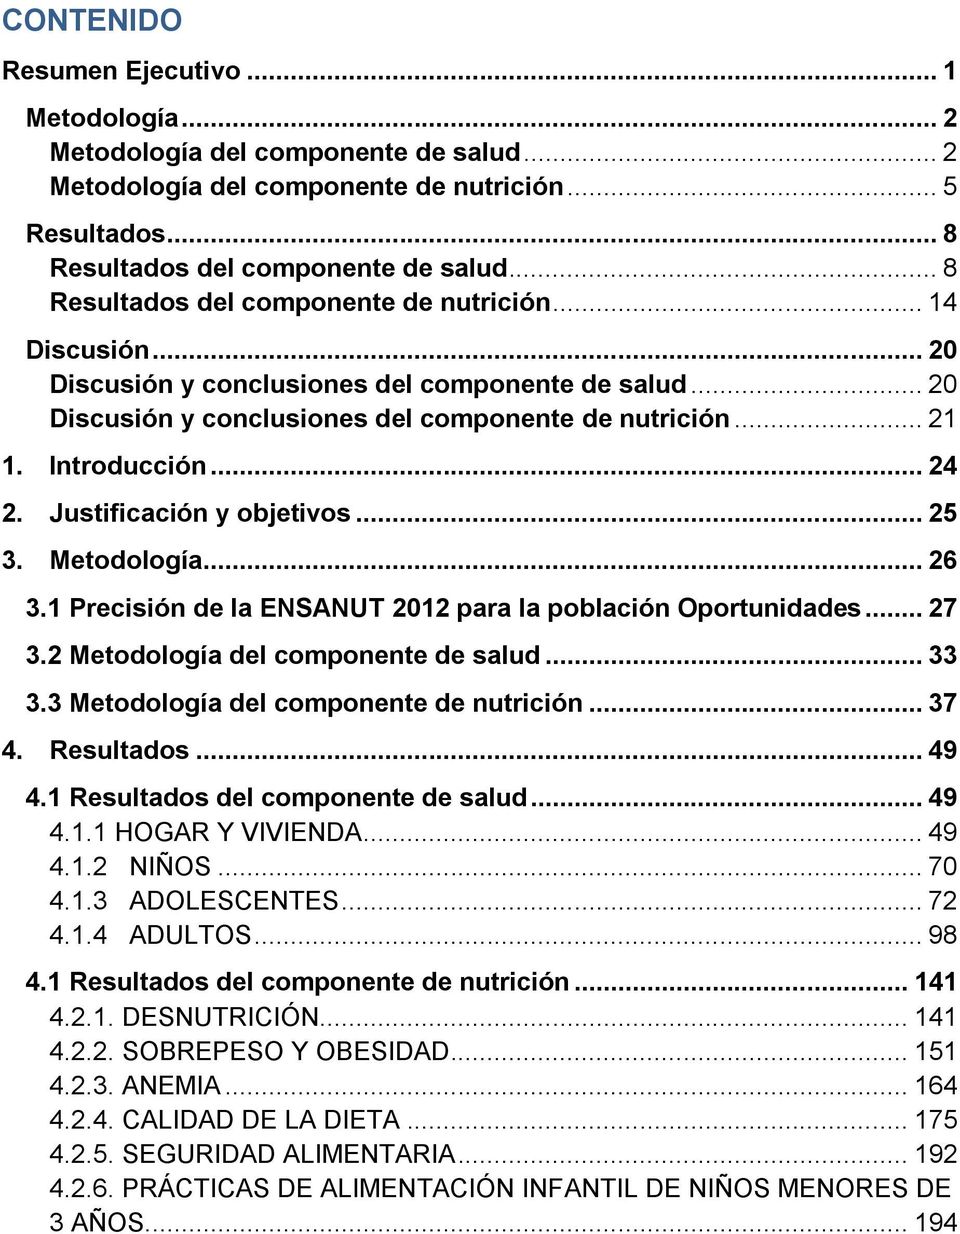 .. 24 2. Justificación y objetivos... 25 3. Metodología... 26 3.1 Precisión de la ENSANUT 2012 para la población Oportunidades... 27 3.2 Metodología del componente de salud... 33 3.